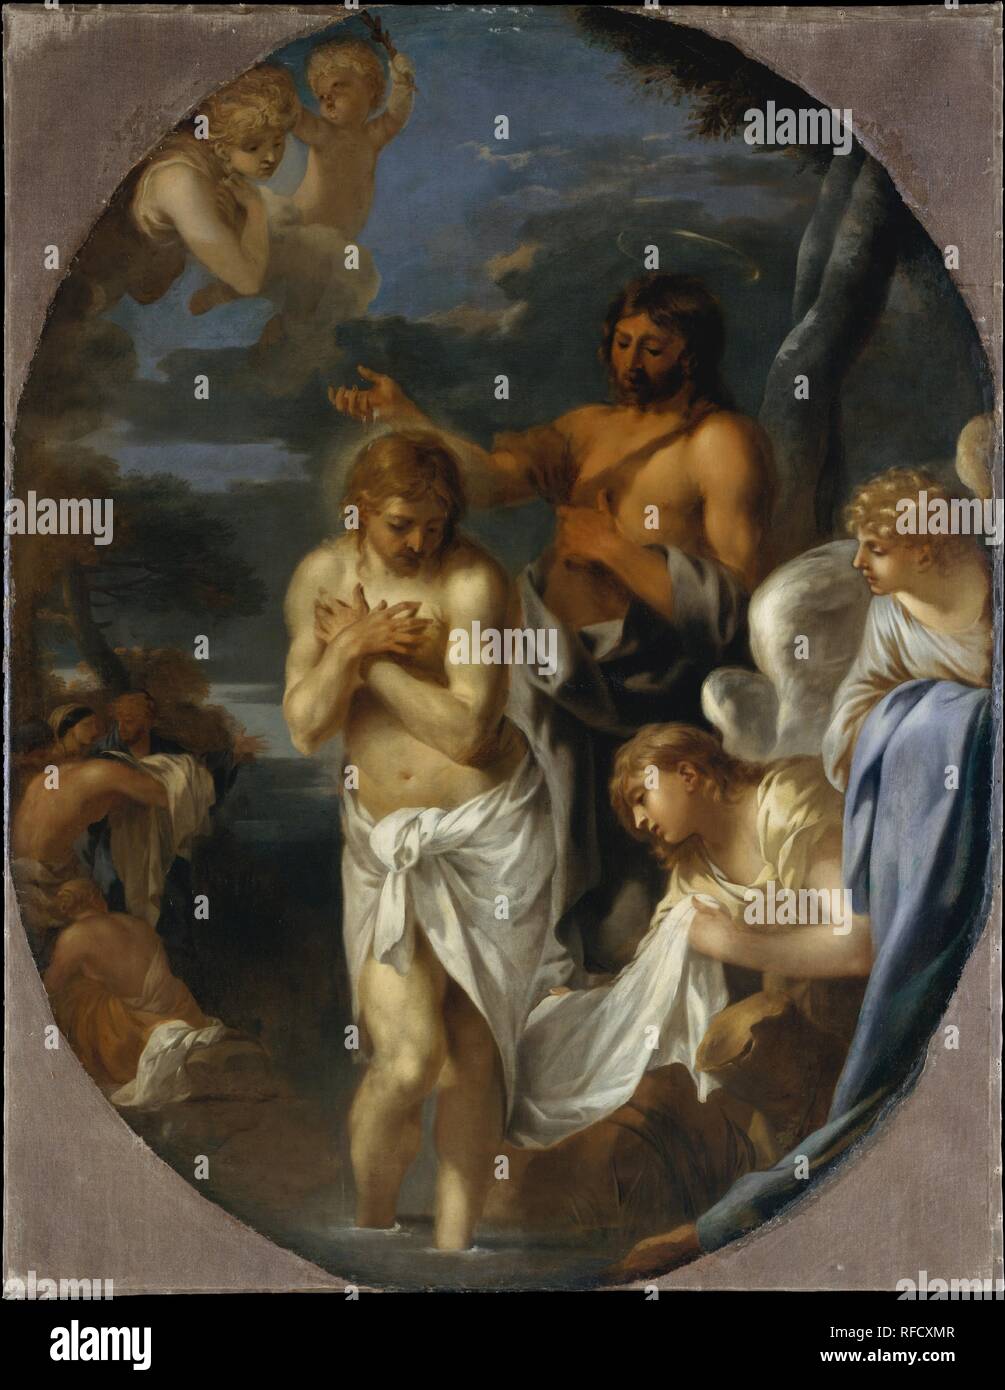 Il Battesimo di Cristo. Artista: Sébastien Bourdon (francese, Montpellier 1616-1671 Paris). Dimensioni: complessivamente 59 3/4 x 46 1/2 in. (151,8 x 118,1 cm); superficie verniciata (ovale) 59 1/8 x 45 1/2 in. (150,2 x 115,6 cm). Data: ca. 1650. Un seguace di Poussin, Bourdon era uno dei principali esponenti del classicismo in francese dipinto del XVII secolo. Questa tela è stata probabilmente dipinto per la cappella privata di un artista patroni. I colori freddi, superfici morbide e atmosfera torbida sono tutti caratteristica di Bourdon di stile maturo. Museo: Metropolitan Museum of Art di New York, Stati Uniti d'America. Foto Stock